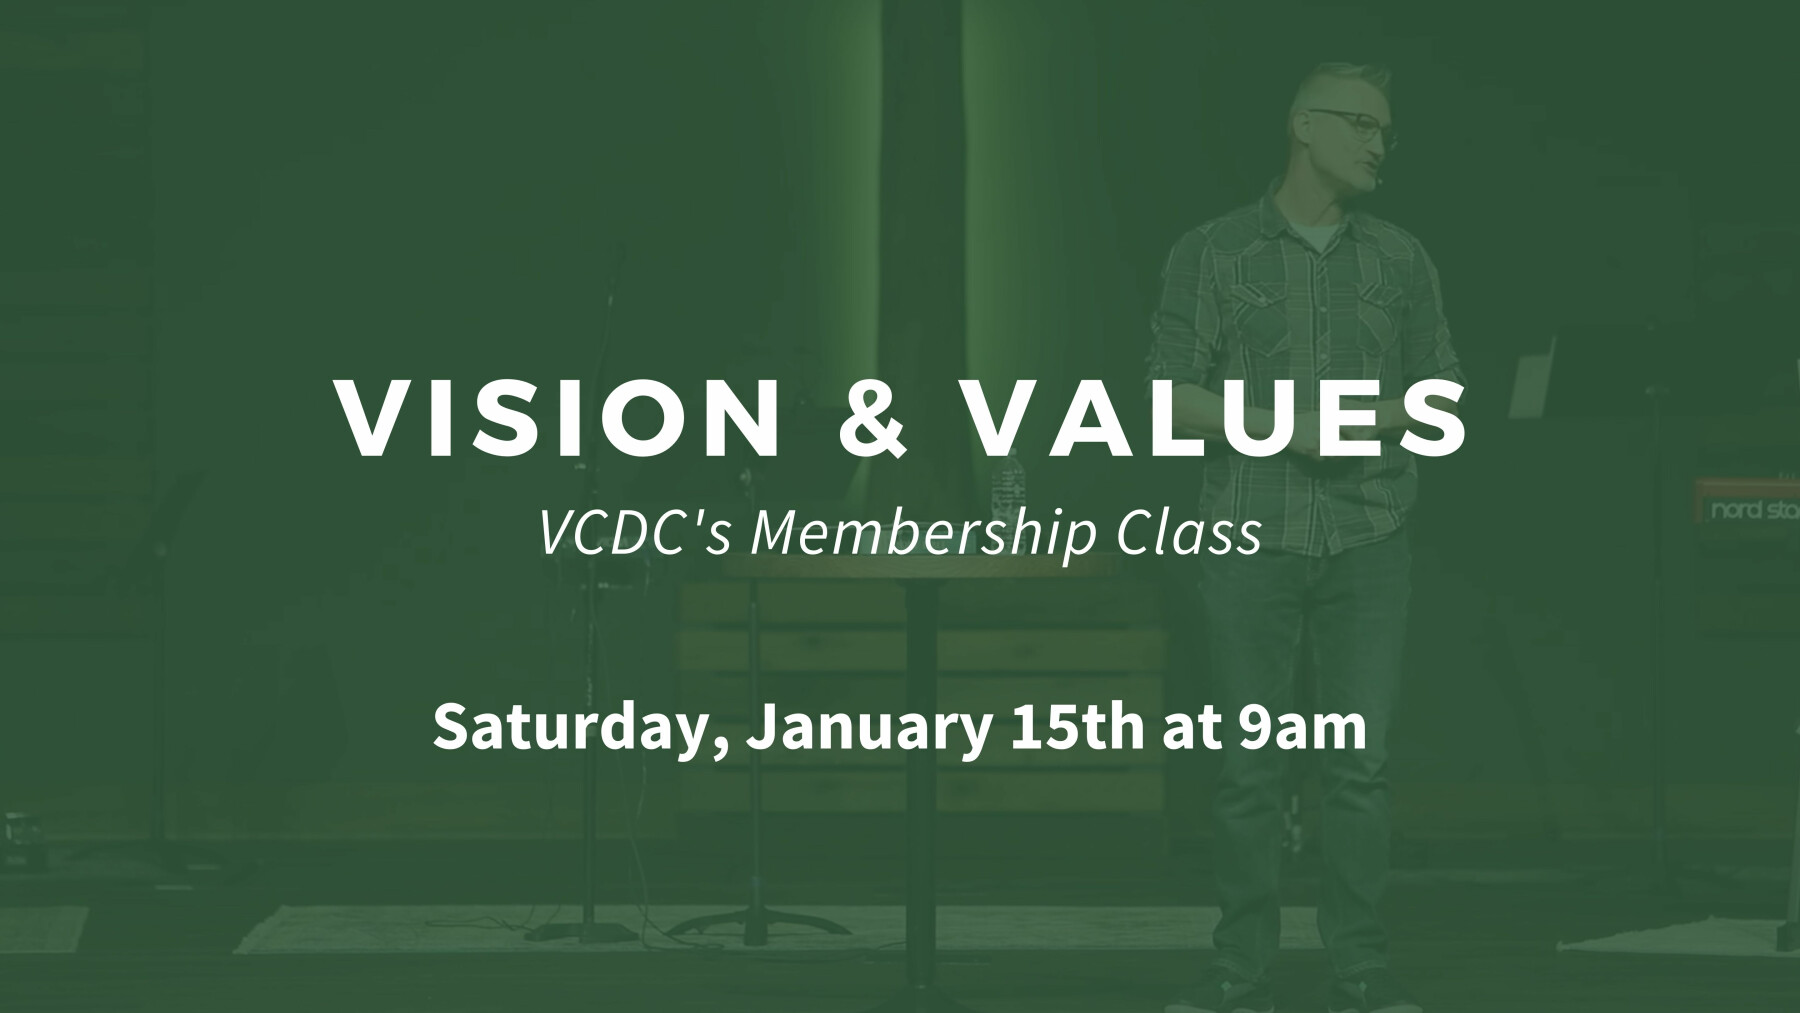 Vision & Values - Saturday, January 15th at 9am